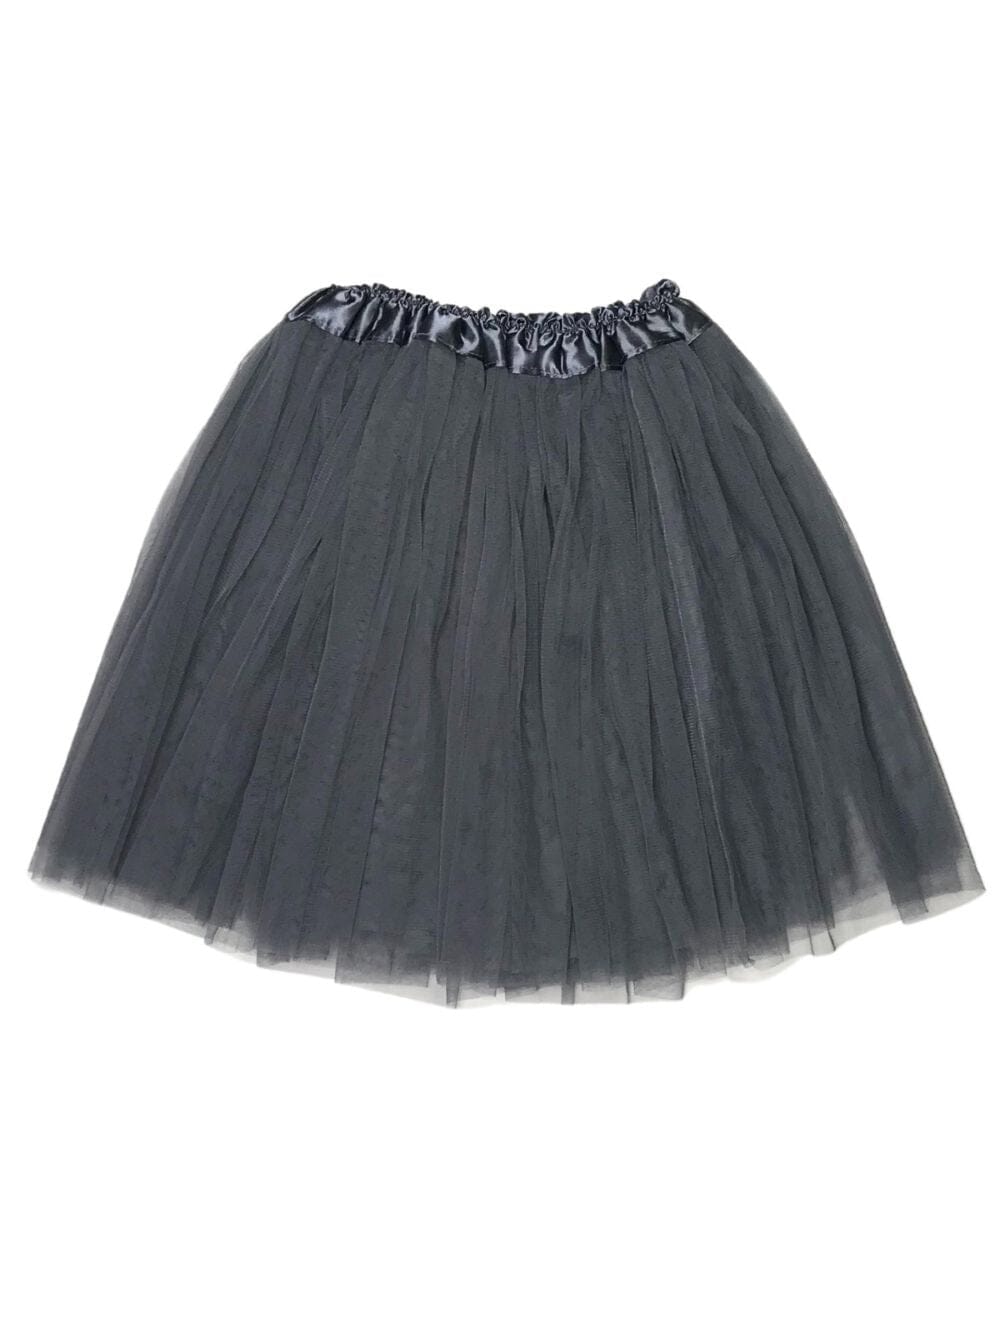 Dark Gray Tutu Skirt for Adult - Women's Size 3-Layer Tulle Skirt Ballet Costume Dance Tutus - Sydney So Sweet